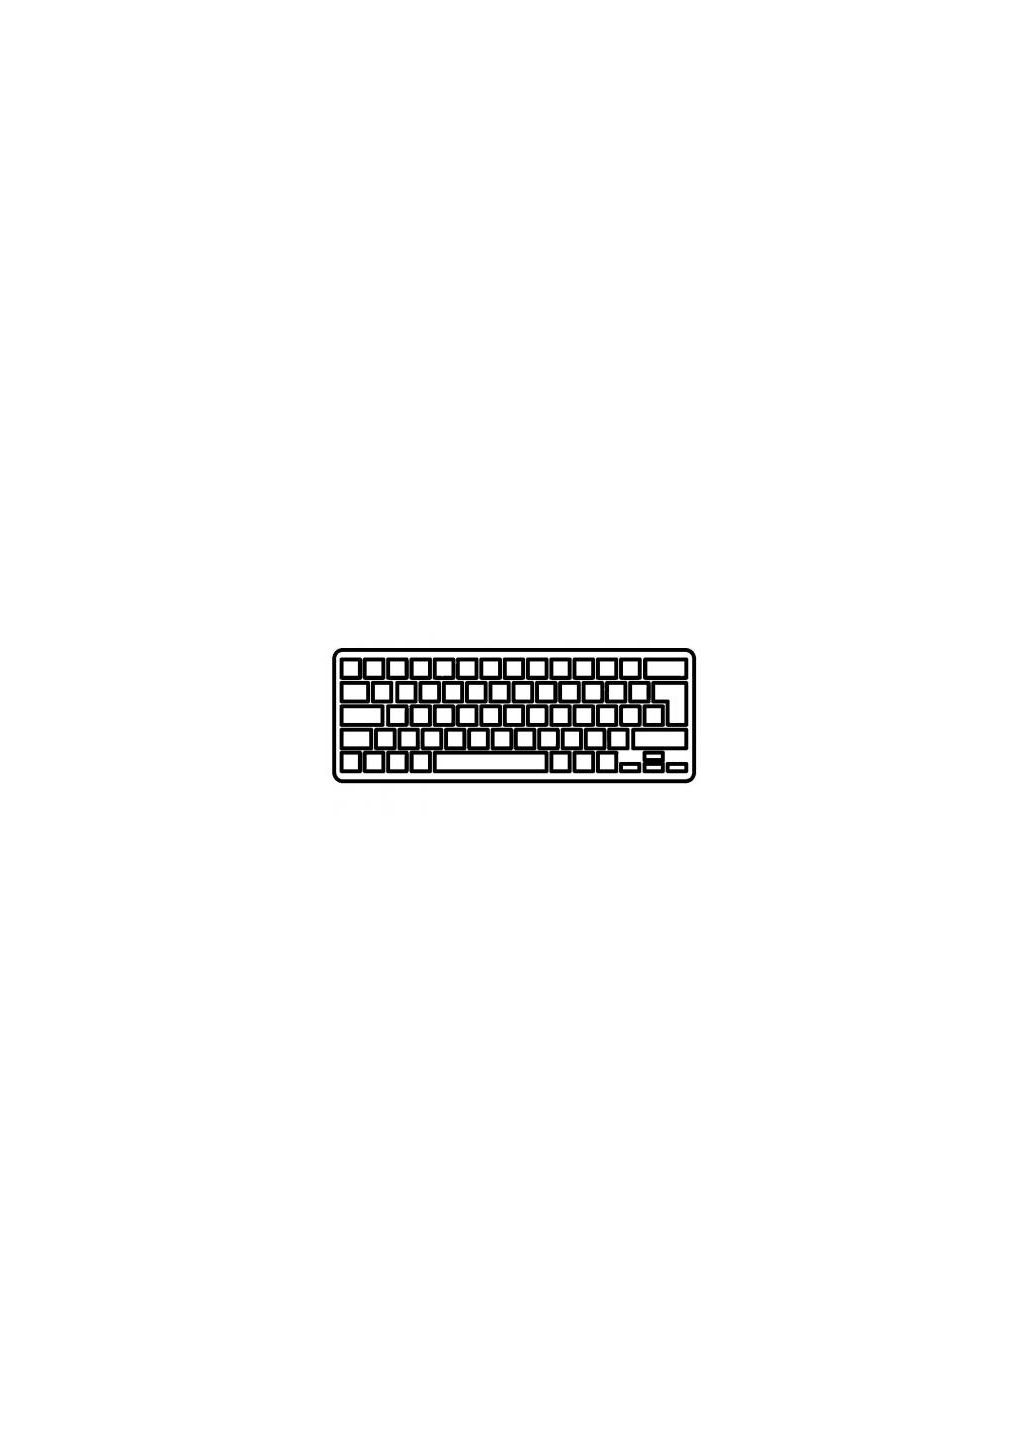 Клавиатура ноутбука Wind U135/U160 с золотистой рамкой RU (A43616) MSI wind u135/u160 черная с золотистой рамкой ru (276706530)